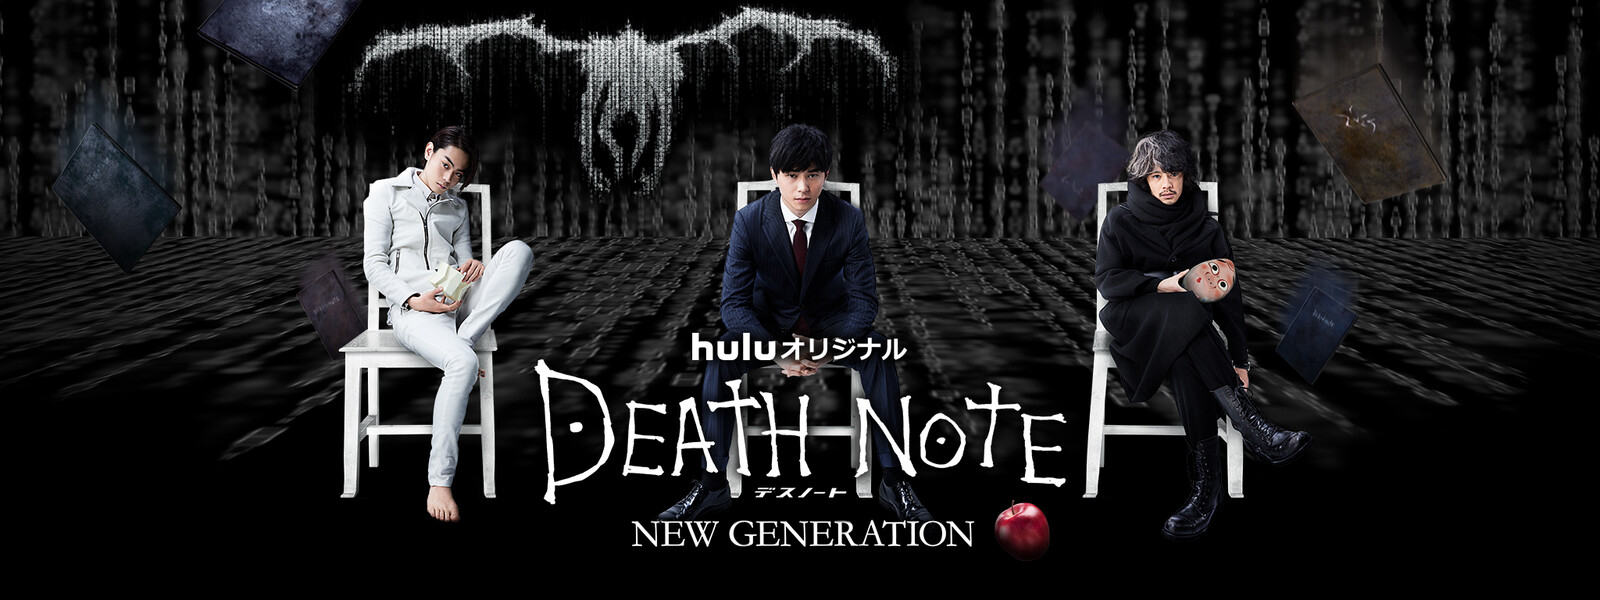 DEATH NOTE デスノート NEW GENERATIONの動画 - アニメ DEATH NOTE デスノート リライト